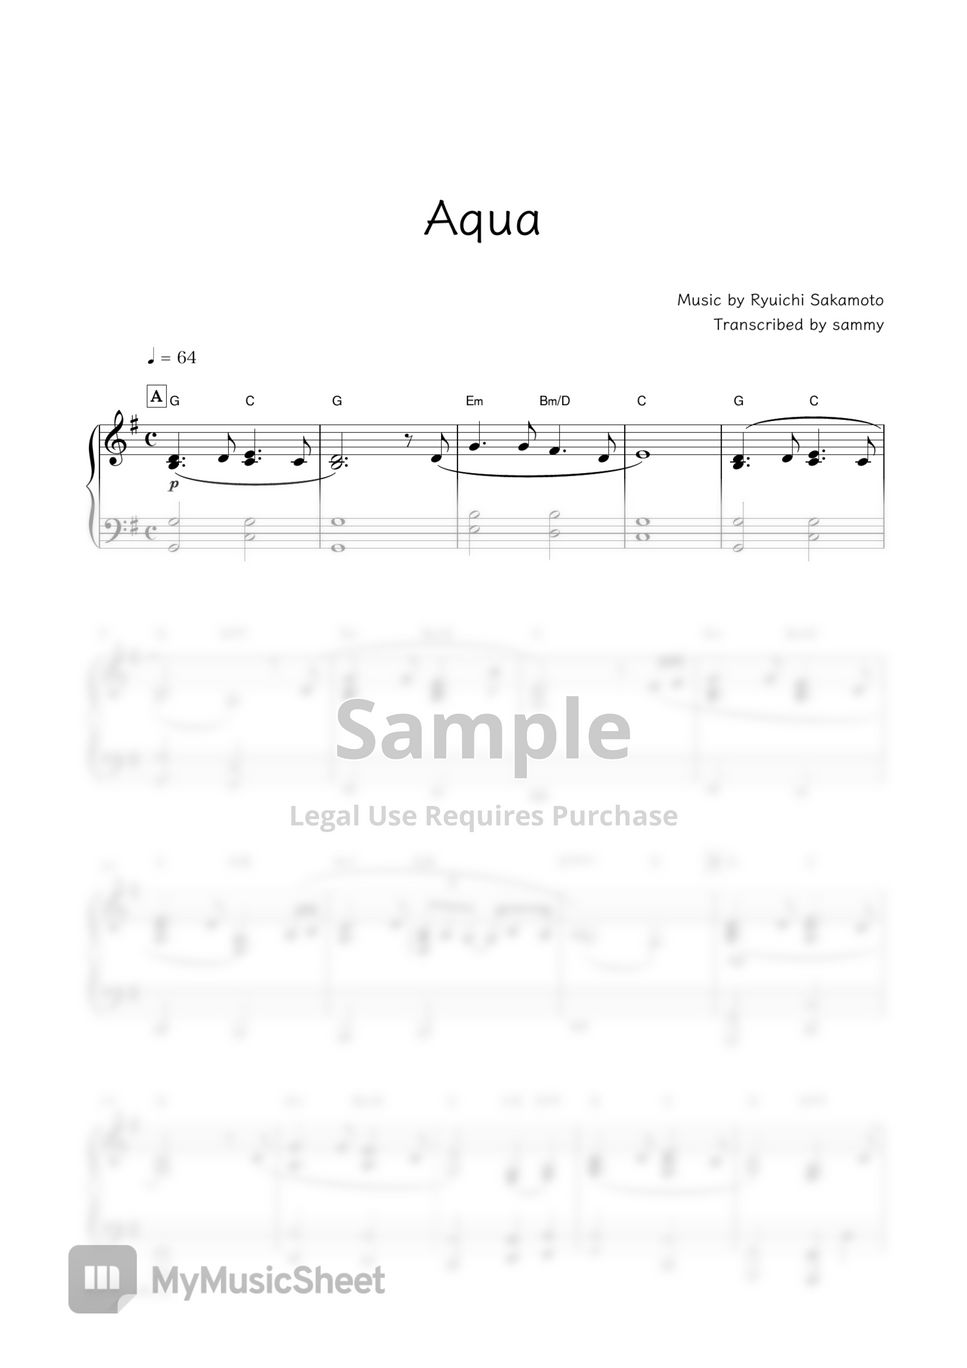 坂本龙一／电影《怪物》OST - Aqua by sammy